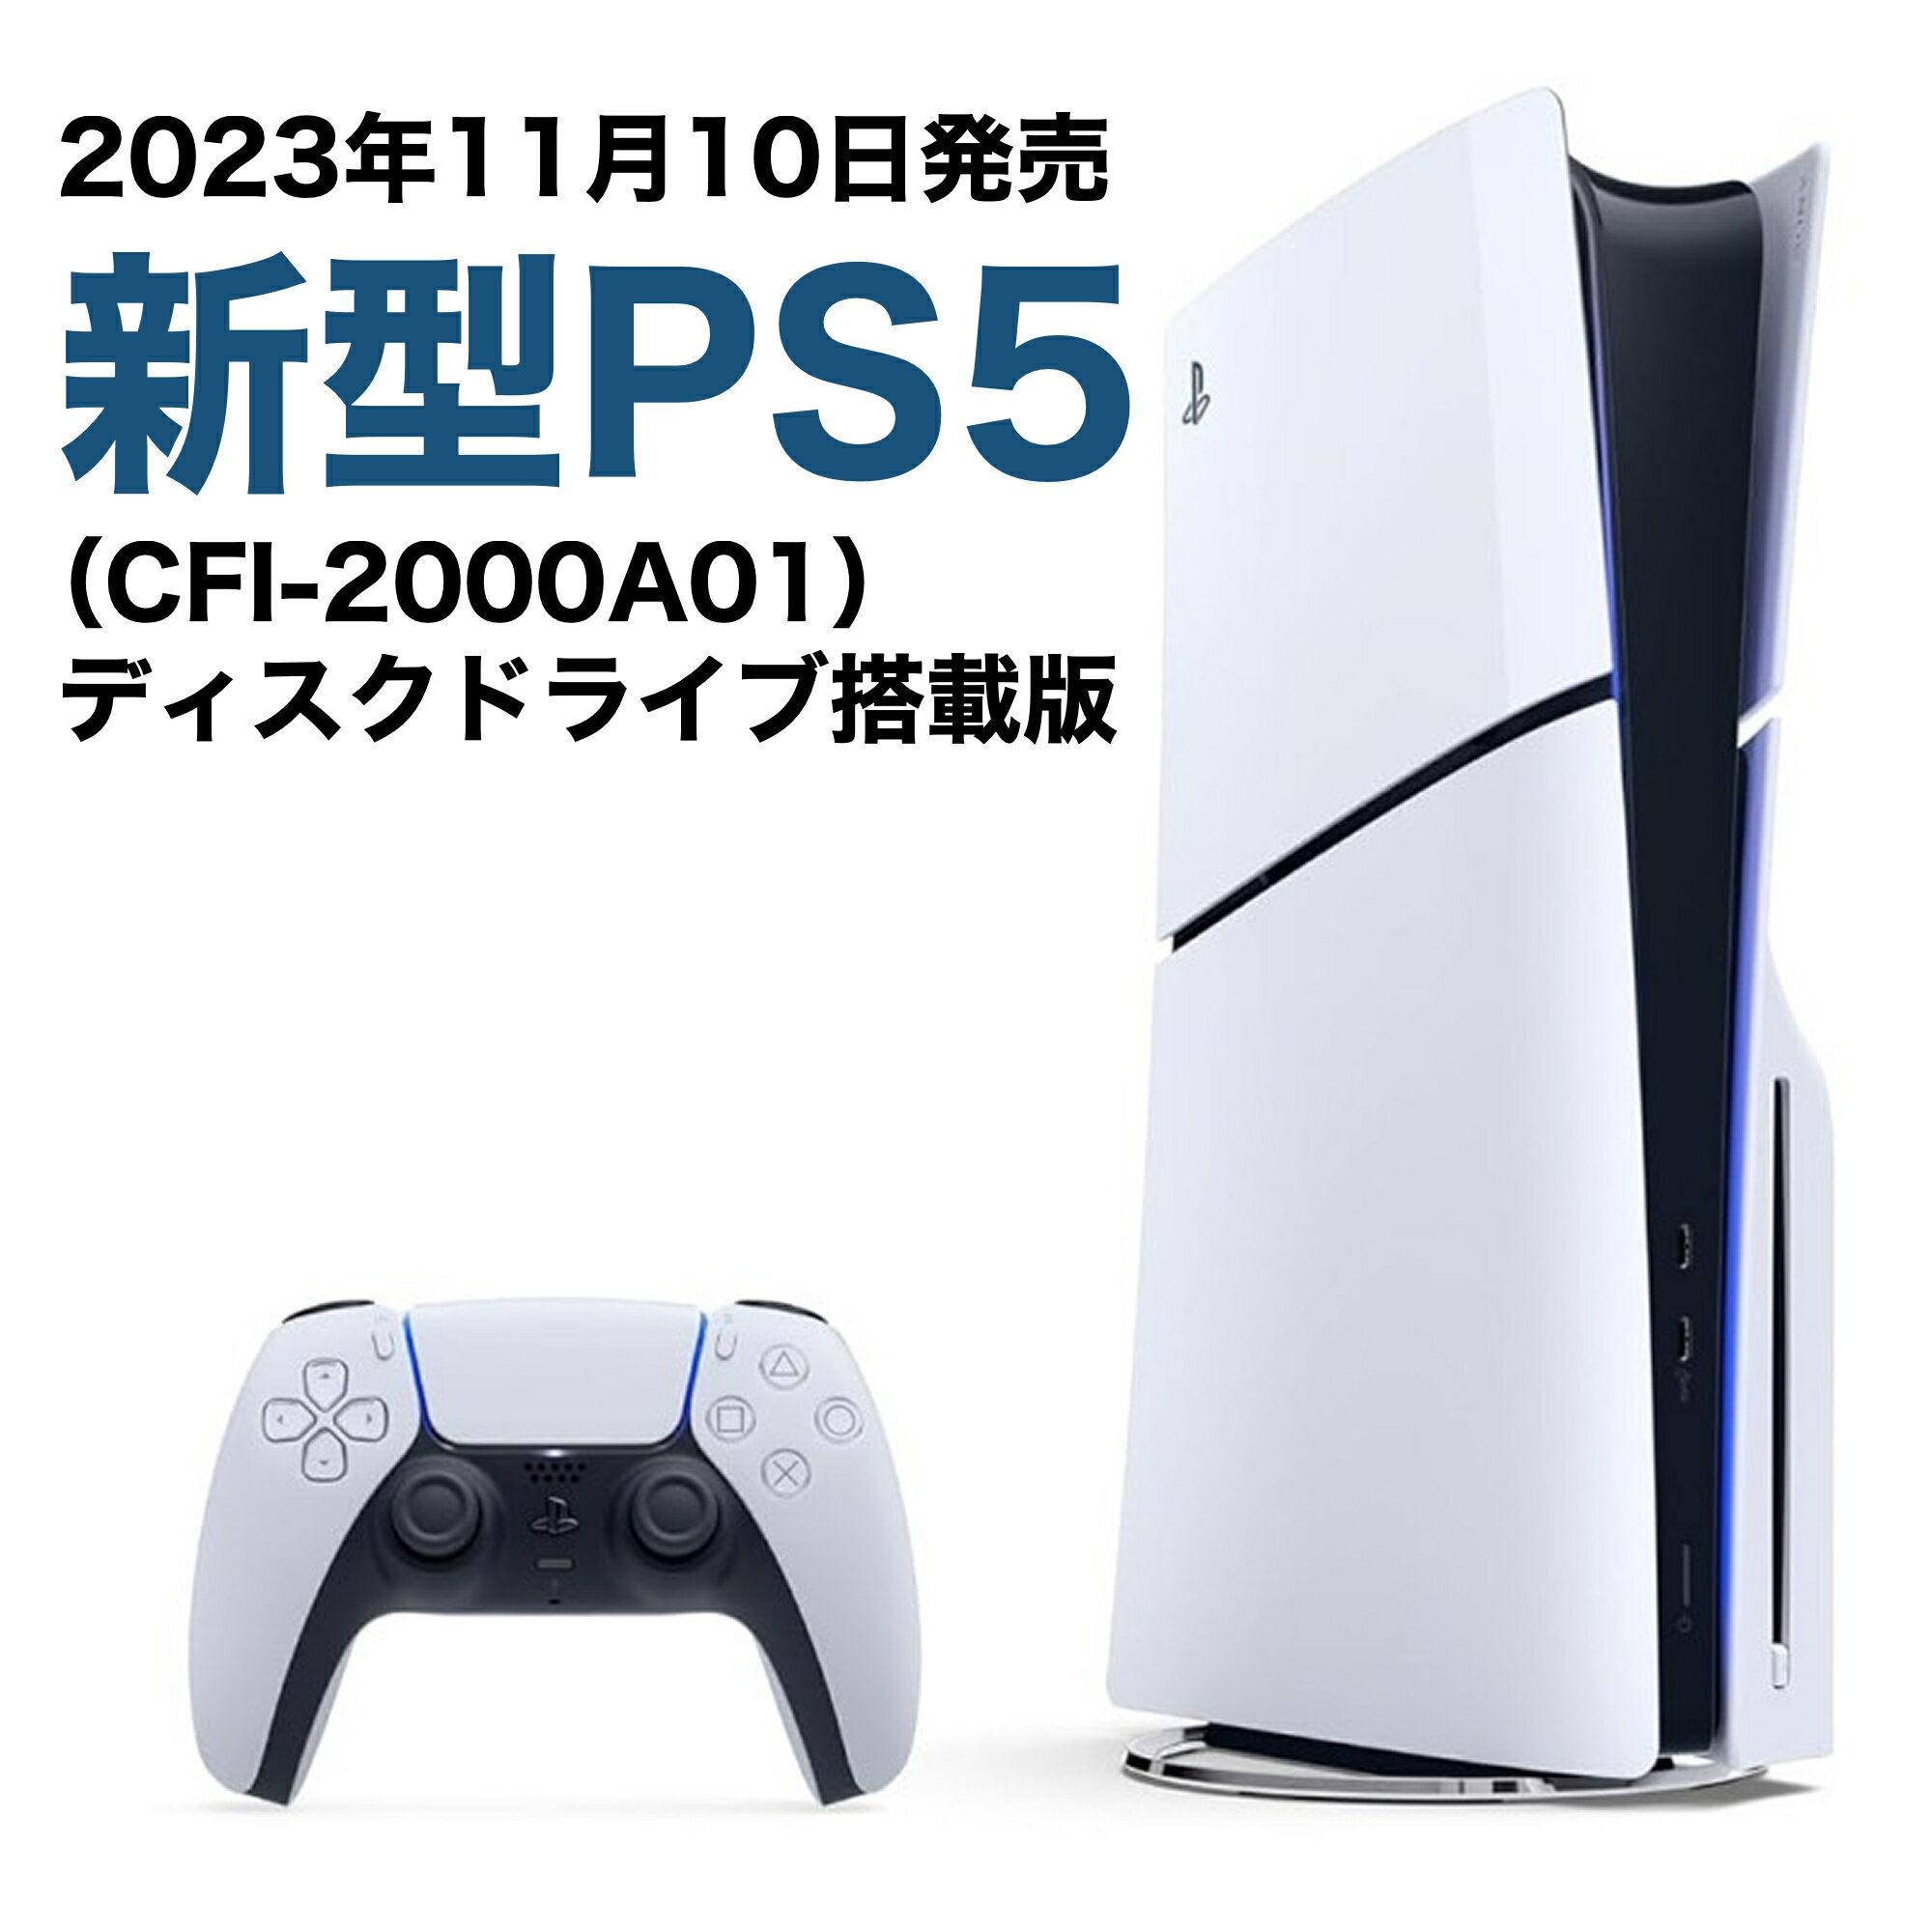 【14時までのご注文で当日発送】2023年 新型モデル PS5 本体 PlayStation5 (CFI-2000A01) プレイステーション <strong>プレステ5</strong> ディスク搭載版 通常版 新品